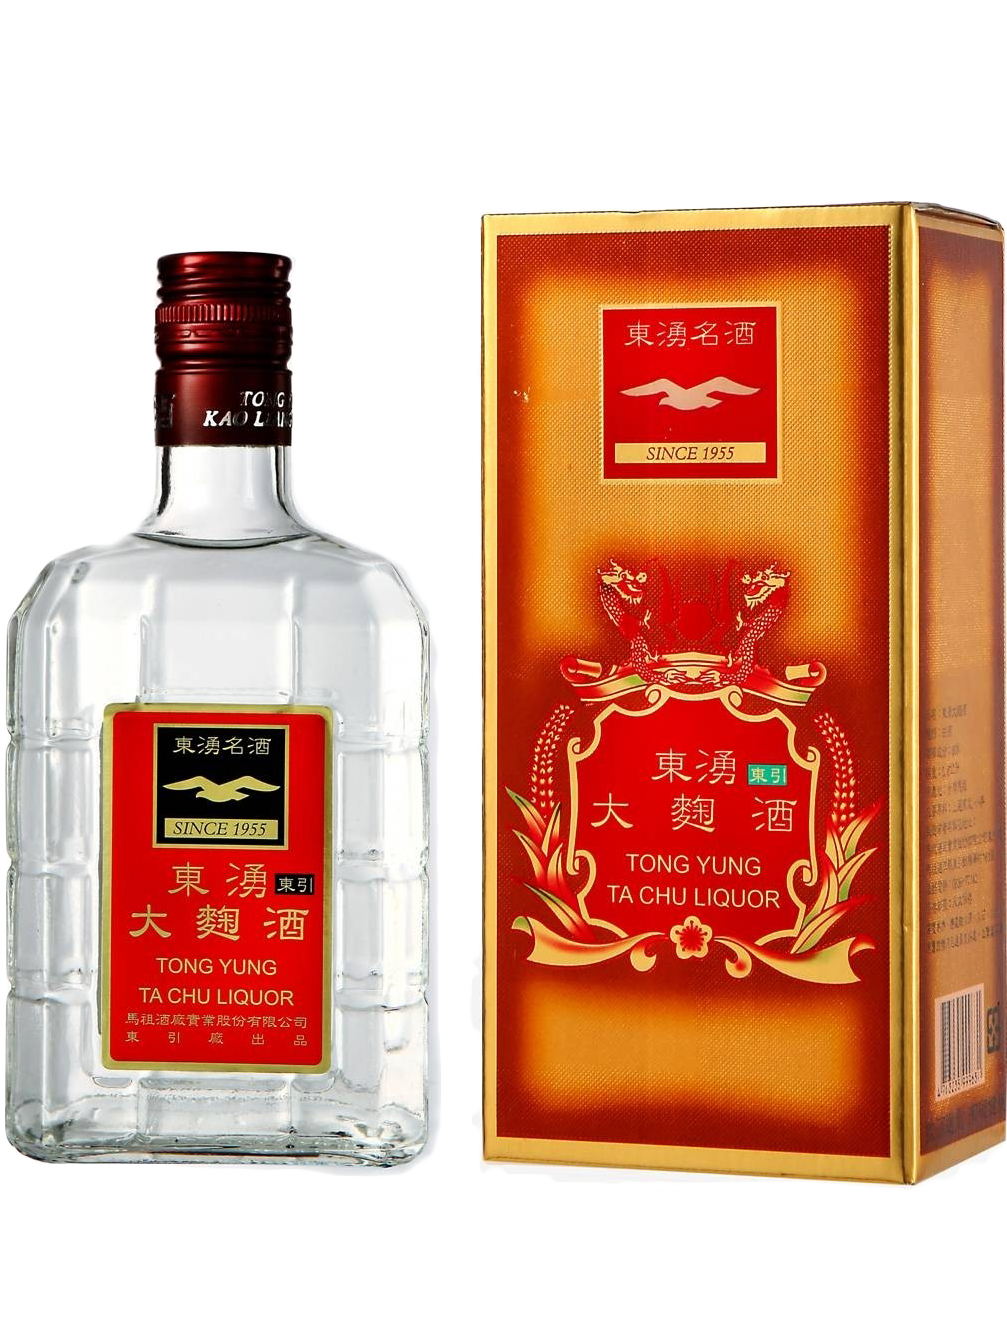 馬祖酒廠| 酒成功詢價網